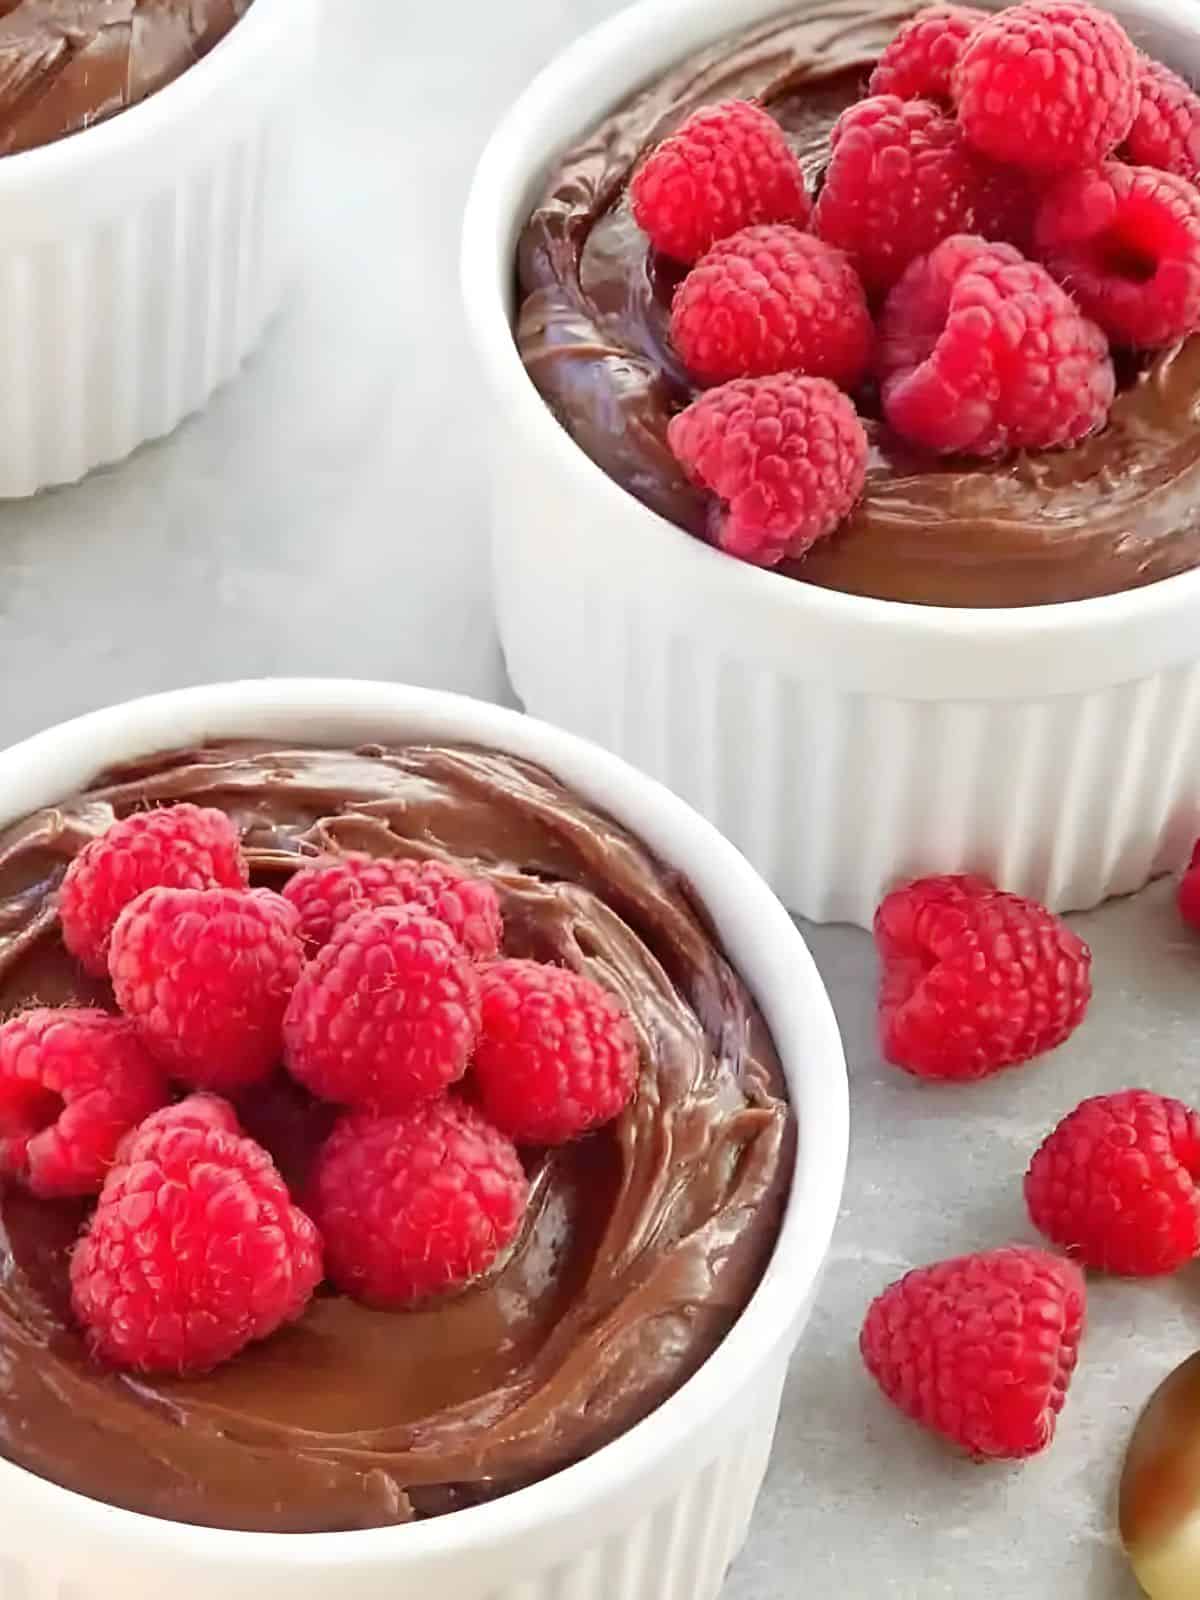 mascarpone Nutella cream in a mug, topped with fresh raspberries.